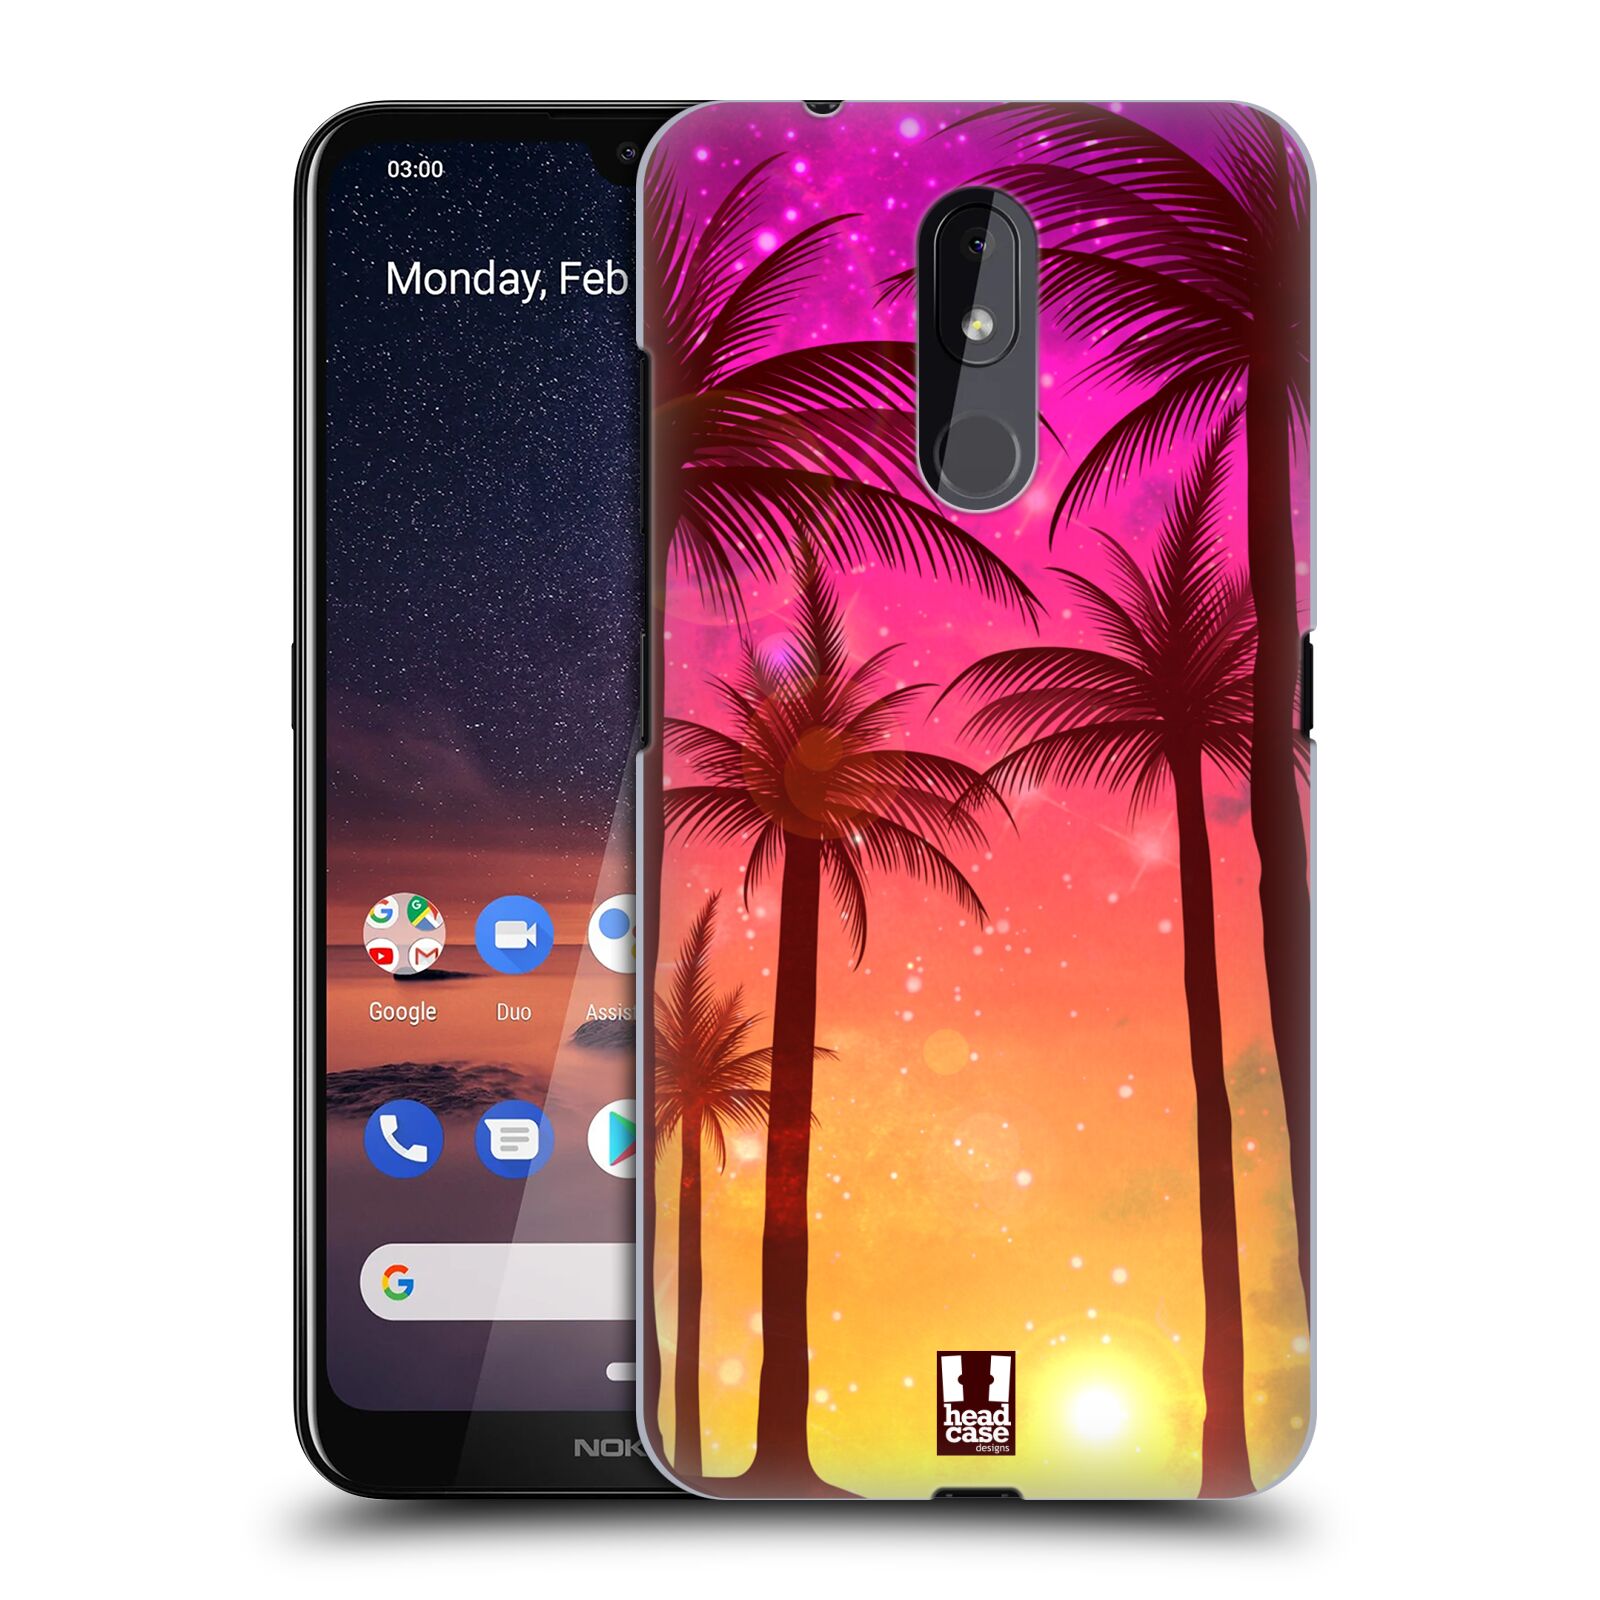 Pouzdro na mobil Nokia 3.2 - HEAD CASE - vzor Kreslený motiv silueta moře a palmy RŮŽOVÁ